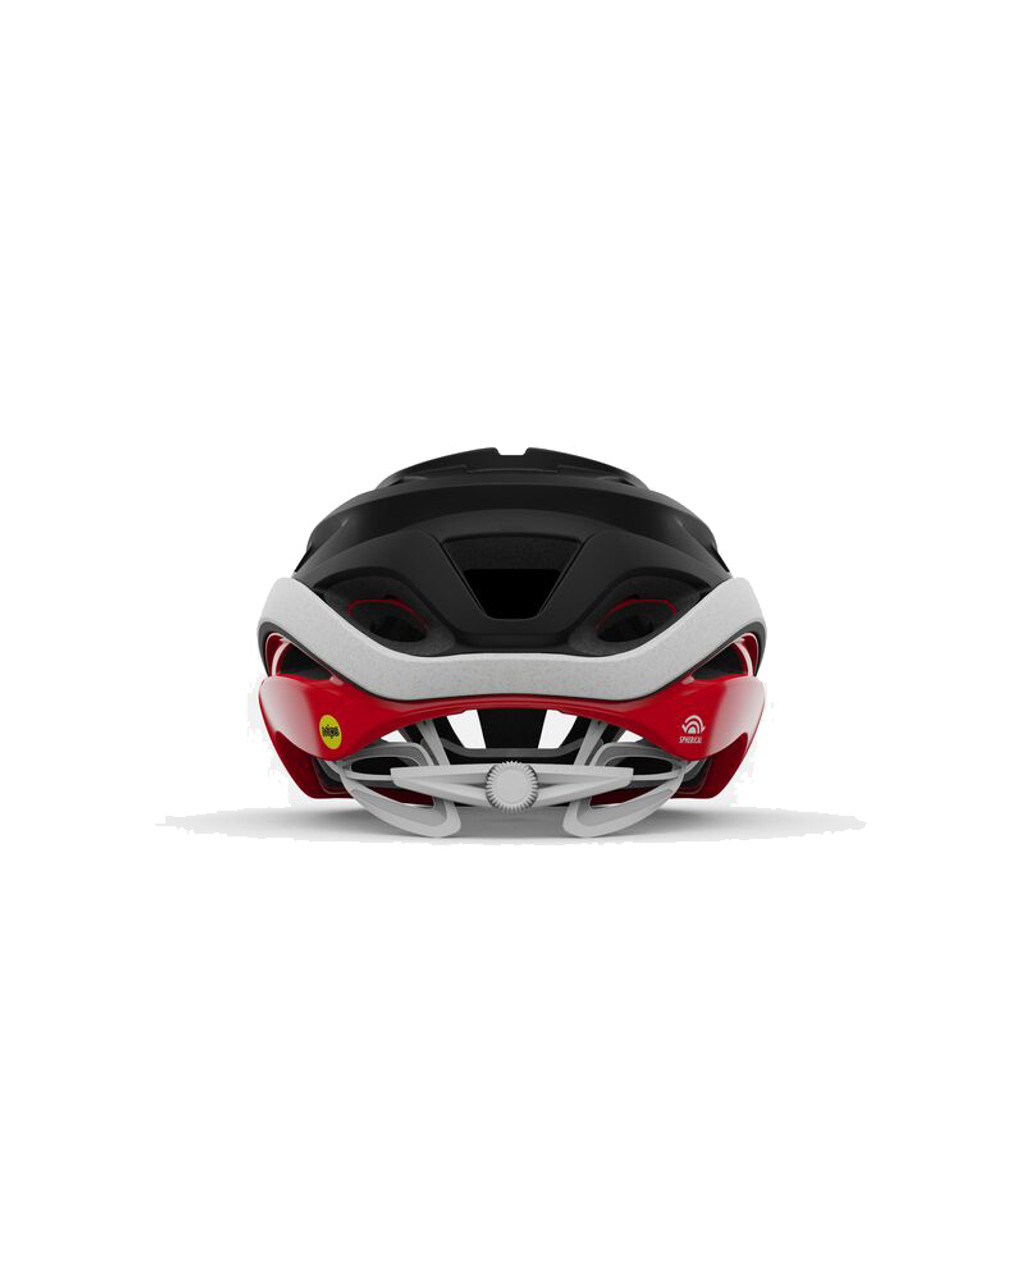 Giro Helios Spherical Adult Road Cycling Helmet - Matte Black/Red